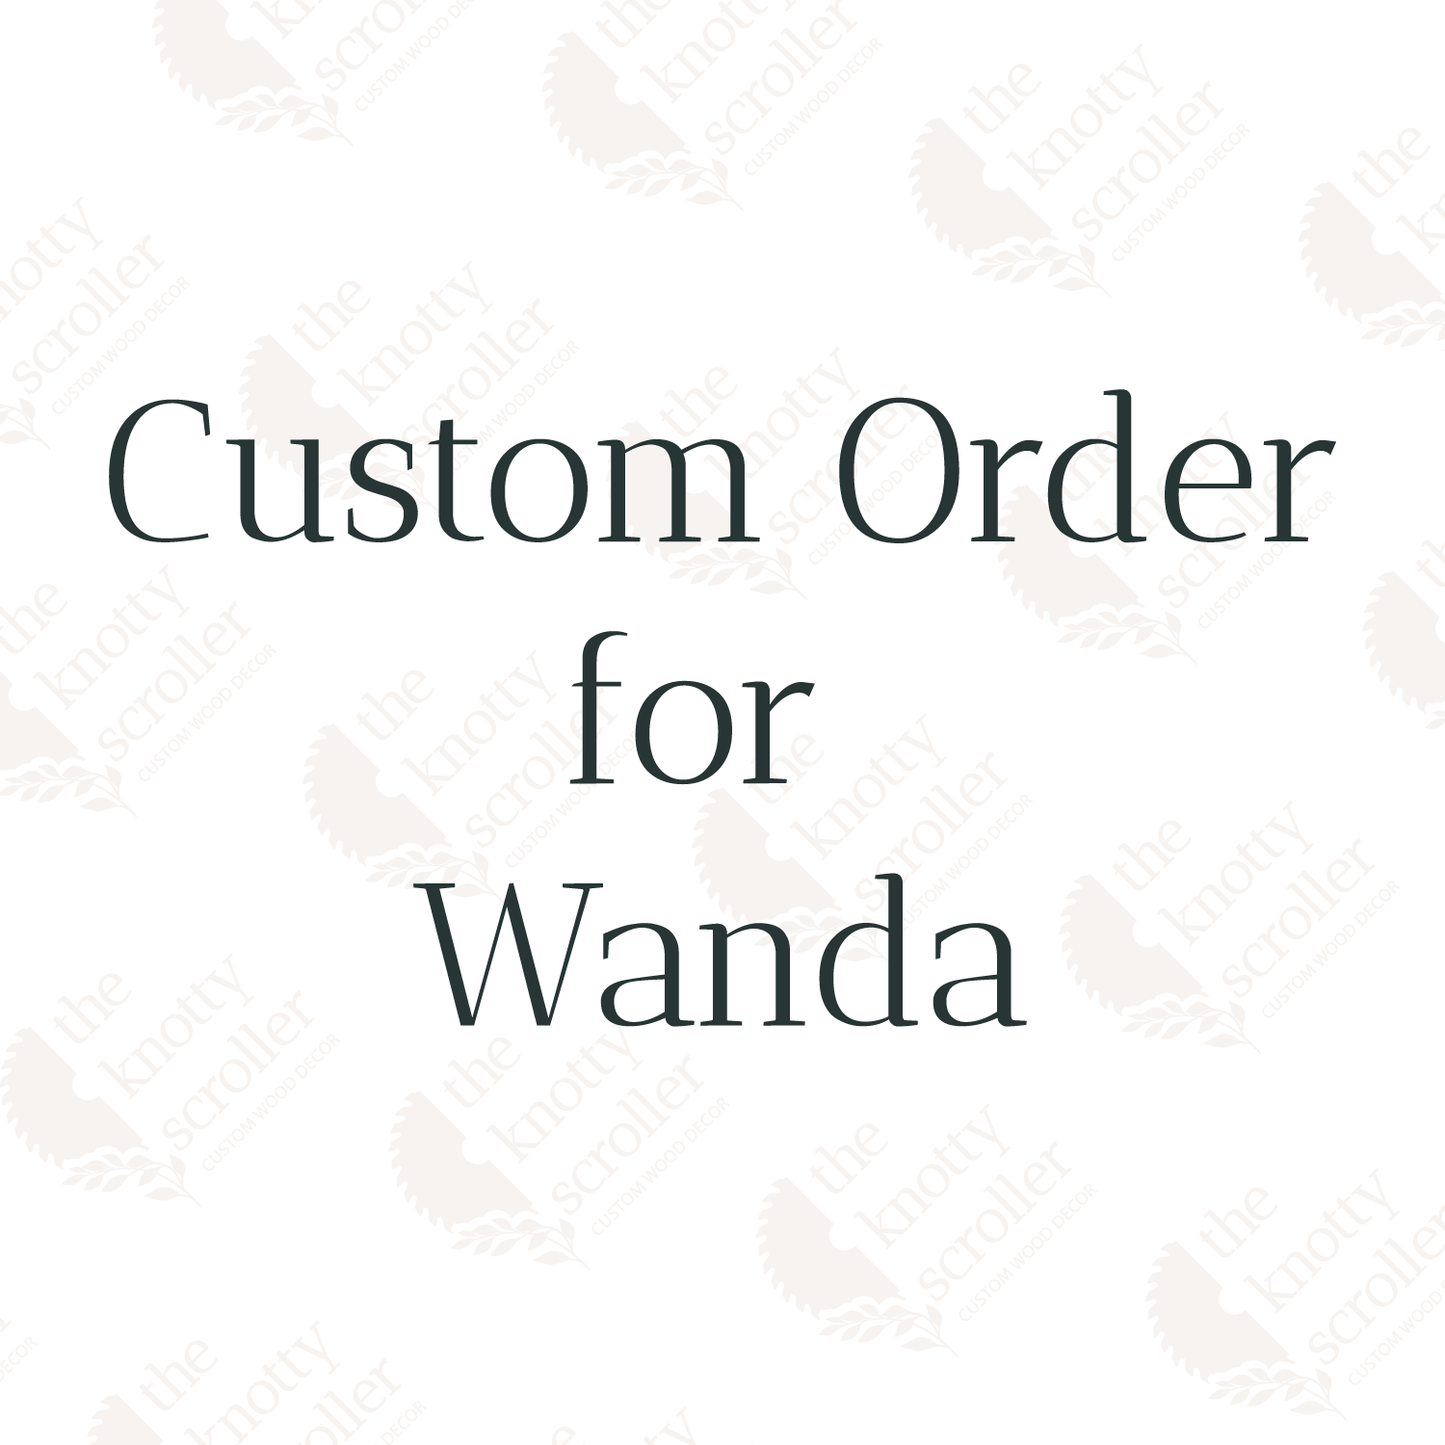 Custom order Wanda